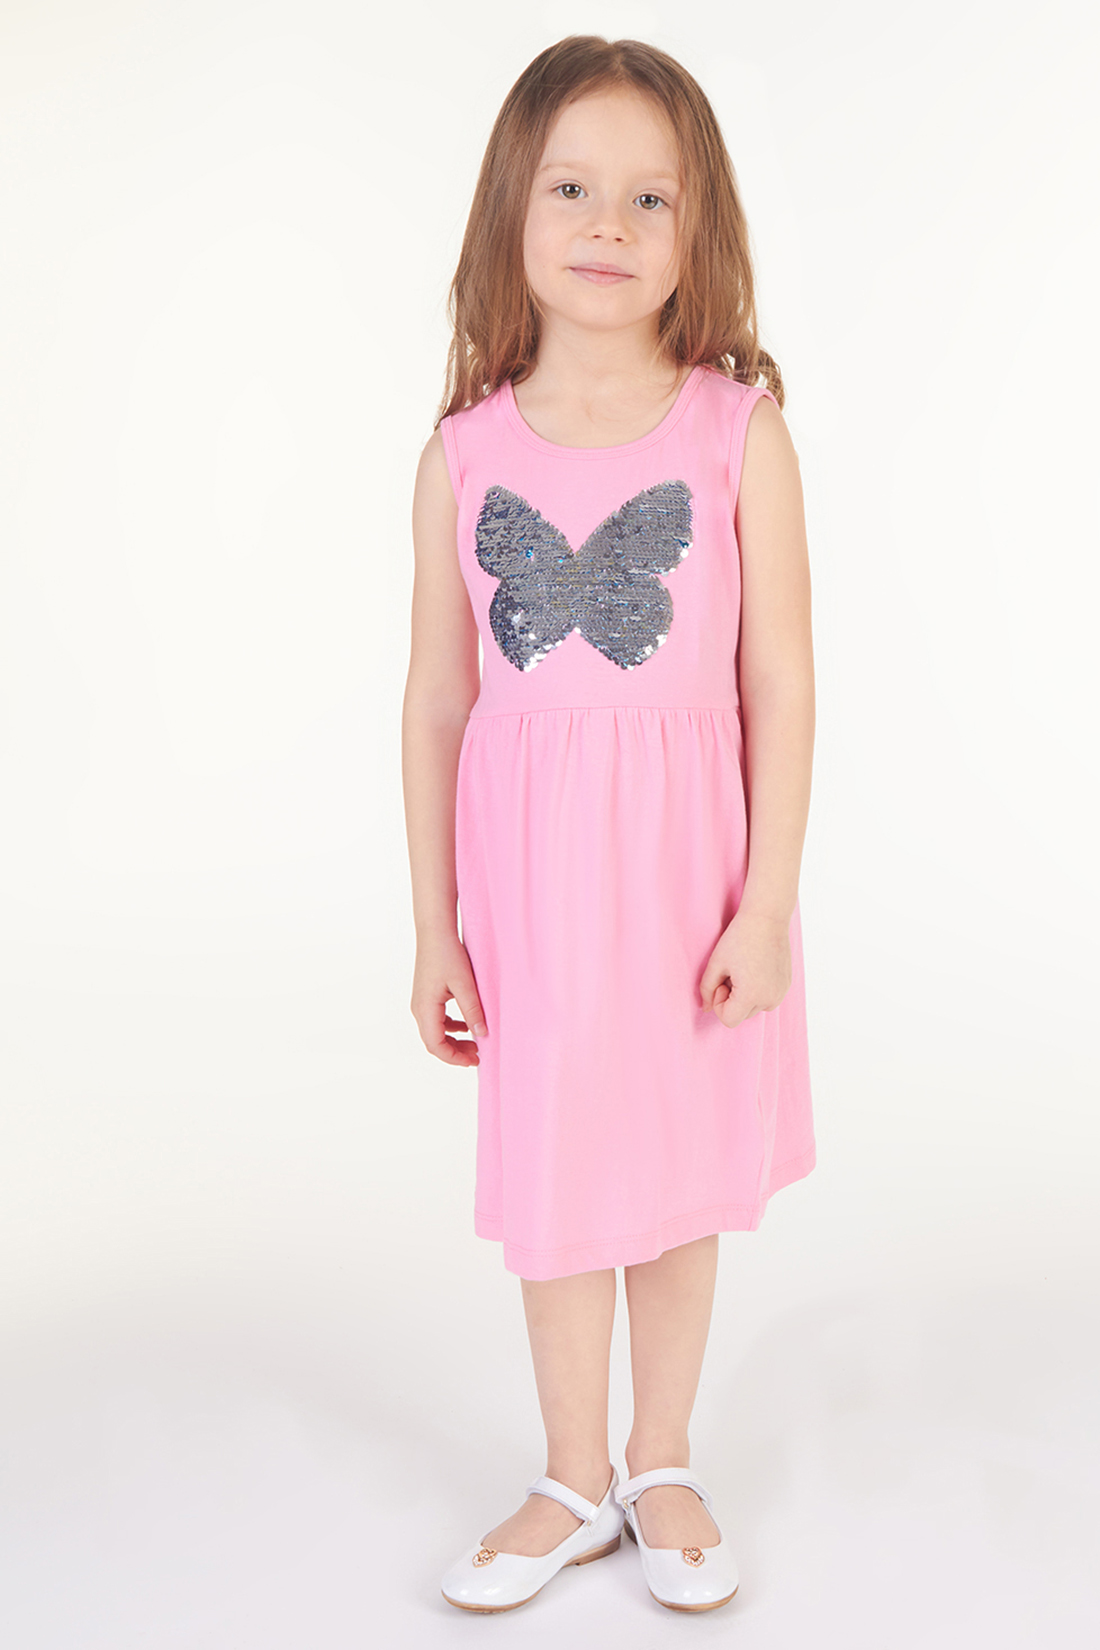 Платье для девочки (арт. baon BK458009), размер 110-116, цвет розовый